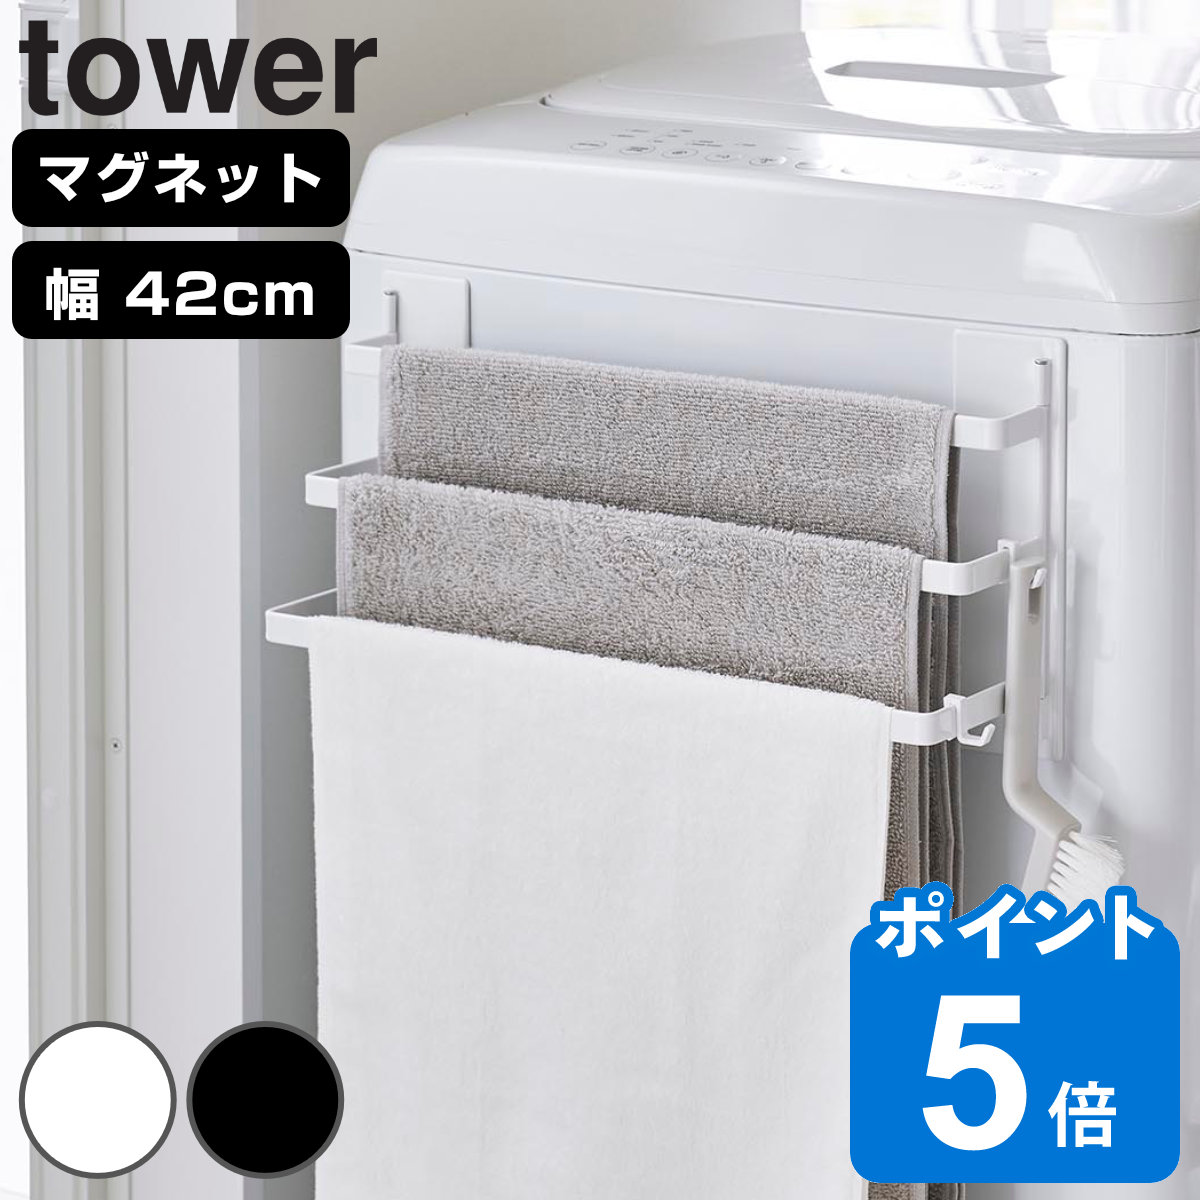 山崎実業 tower 洗濯機前マグネットタオルハンガー タワー 3連